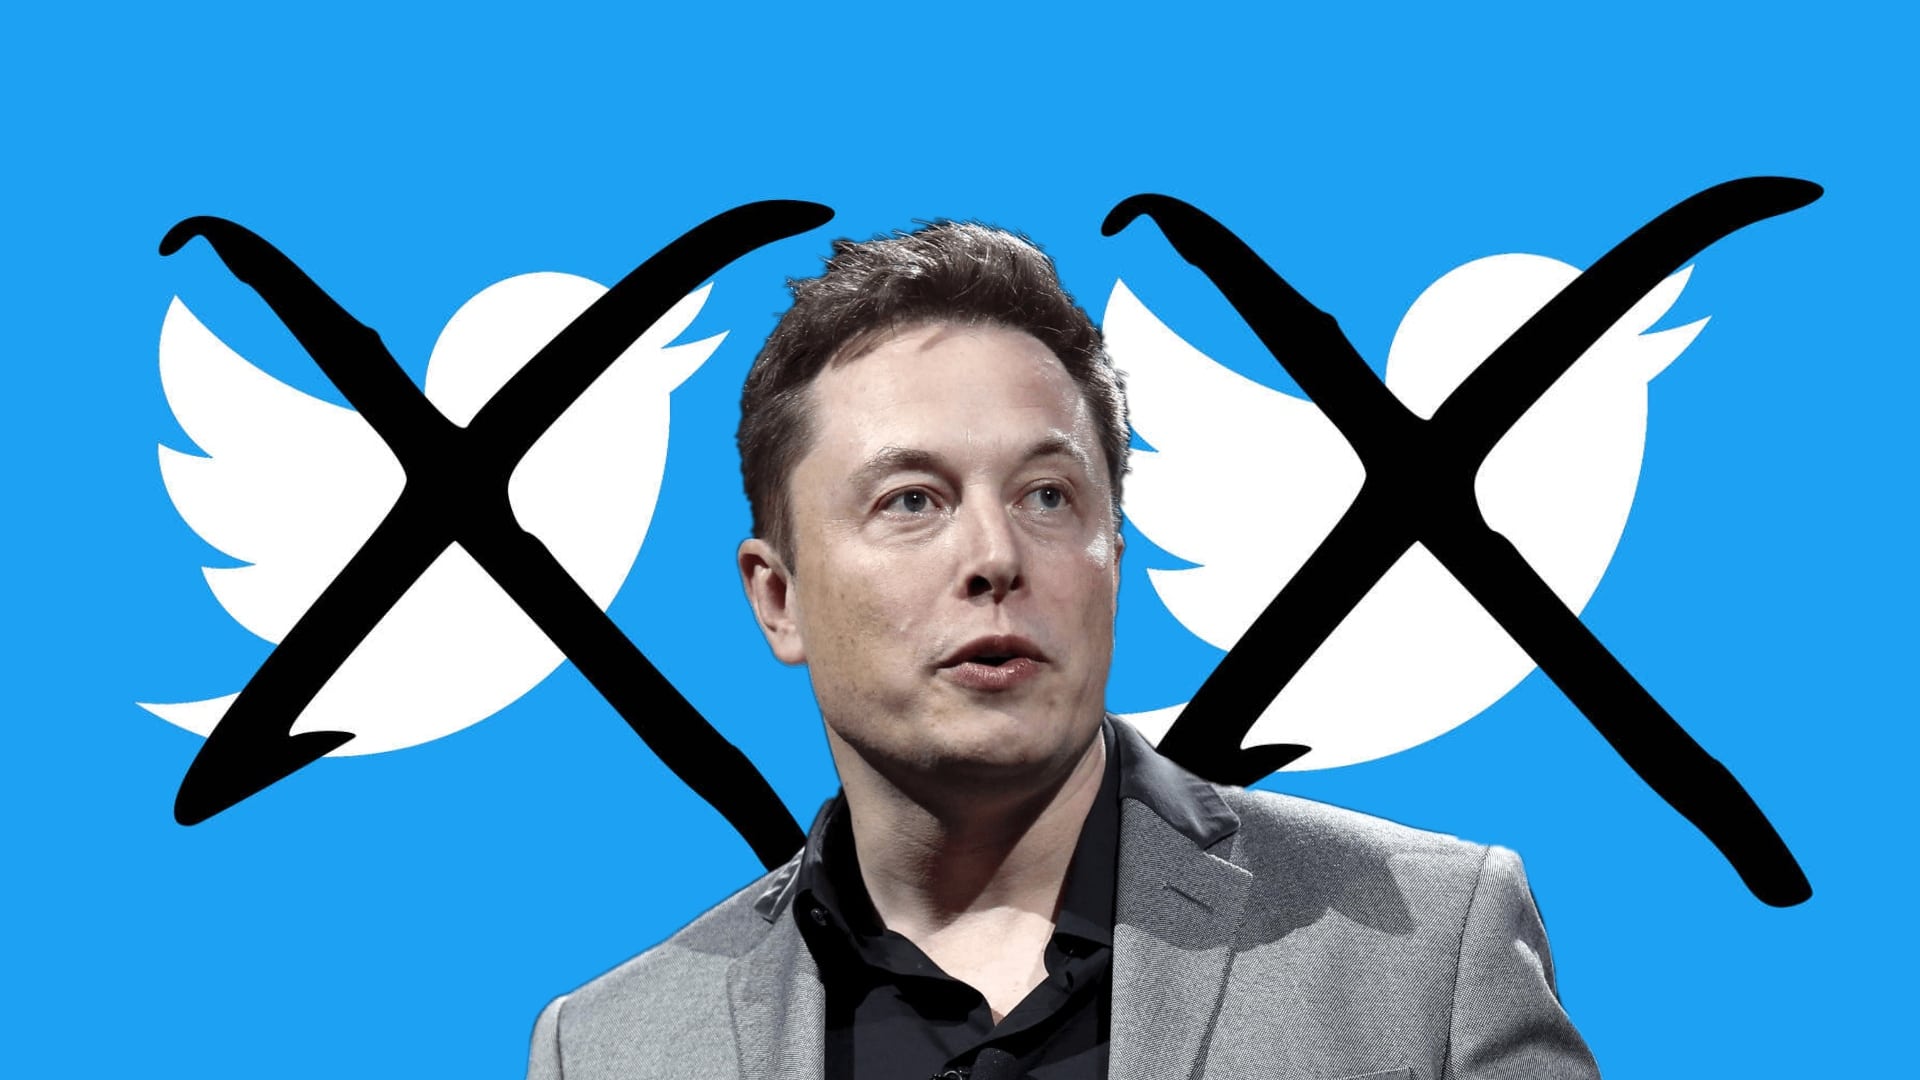 Elon Musk có ý định từ bỏ lời đề nghị mua lại Twitter trị giá 44 tỷ đô la của mình, số phận của nó sẽ được quyết định bởi những gì có thể là một trận chiến hoành tráng, bao gồm nhiều tháng kiện tụng tốn kém và các cuộc đàm phán cổ phần cao bởi các luật sư ưu tú của cả hai bên.